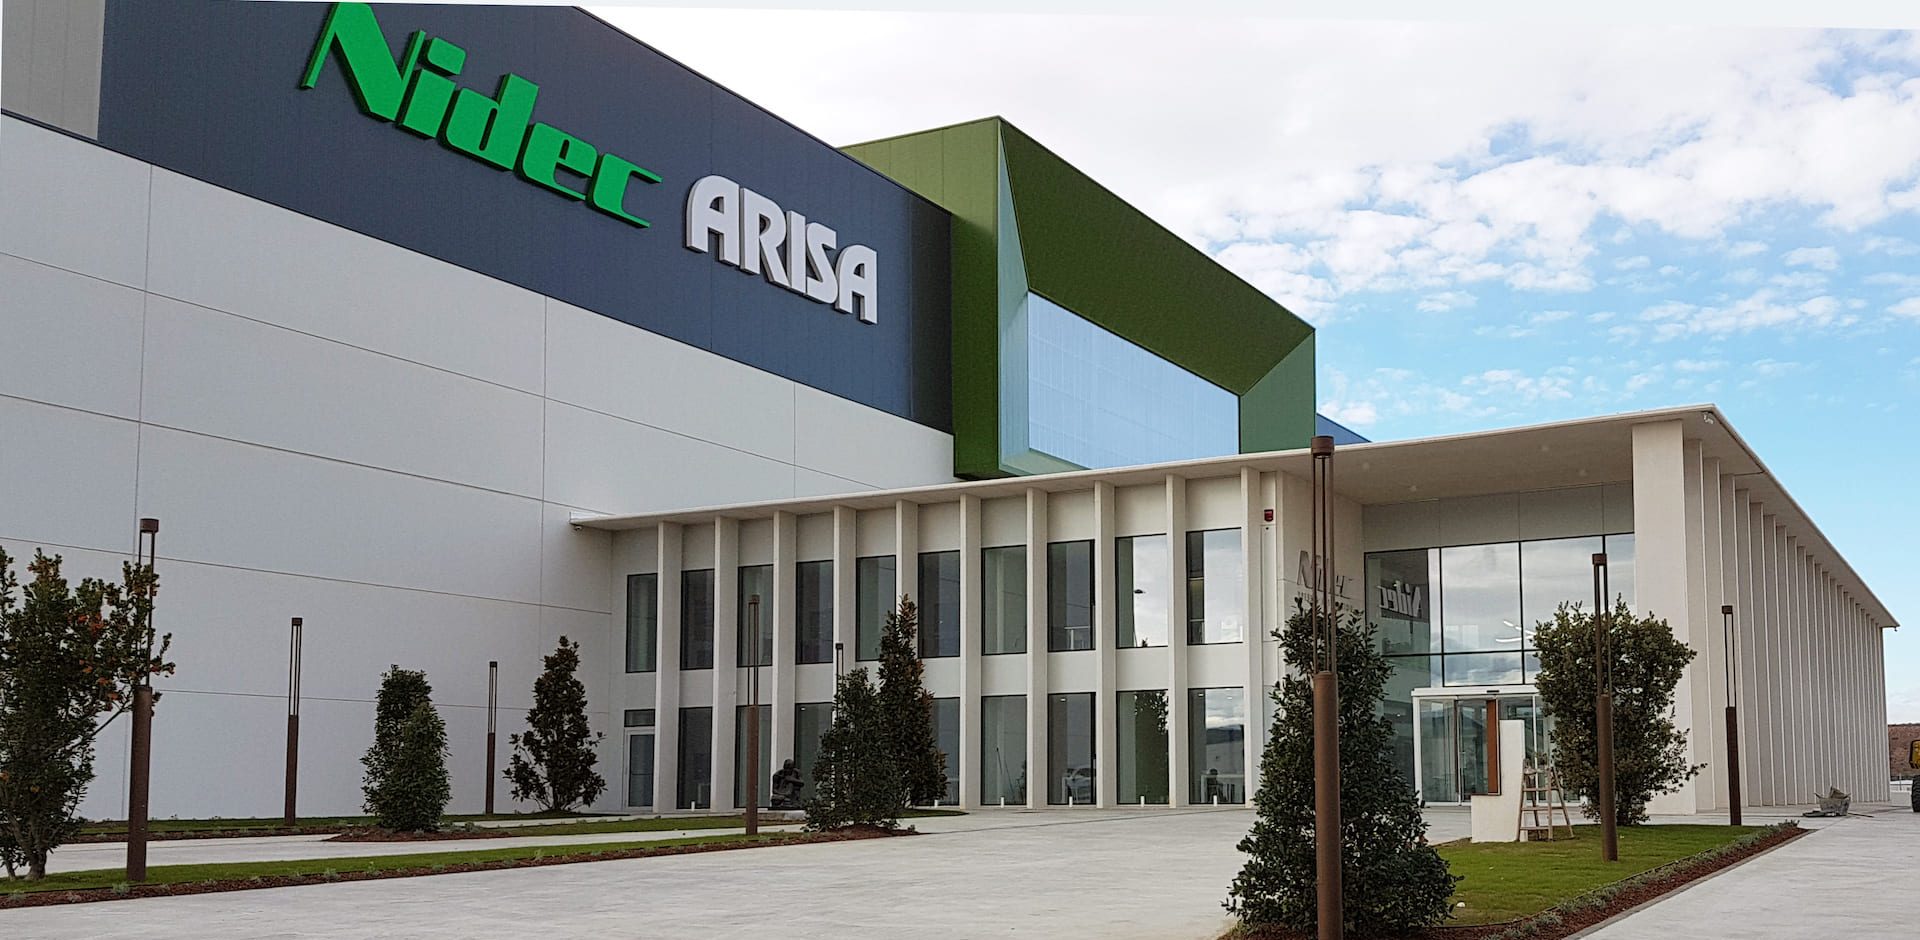 Edificio oficinas Nidec-Arisa